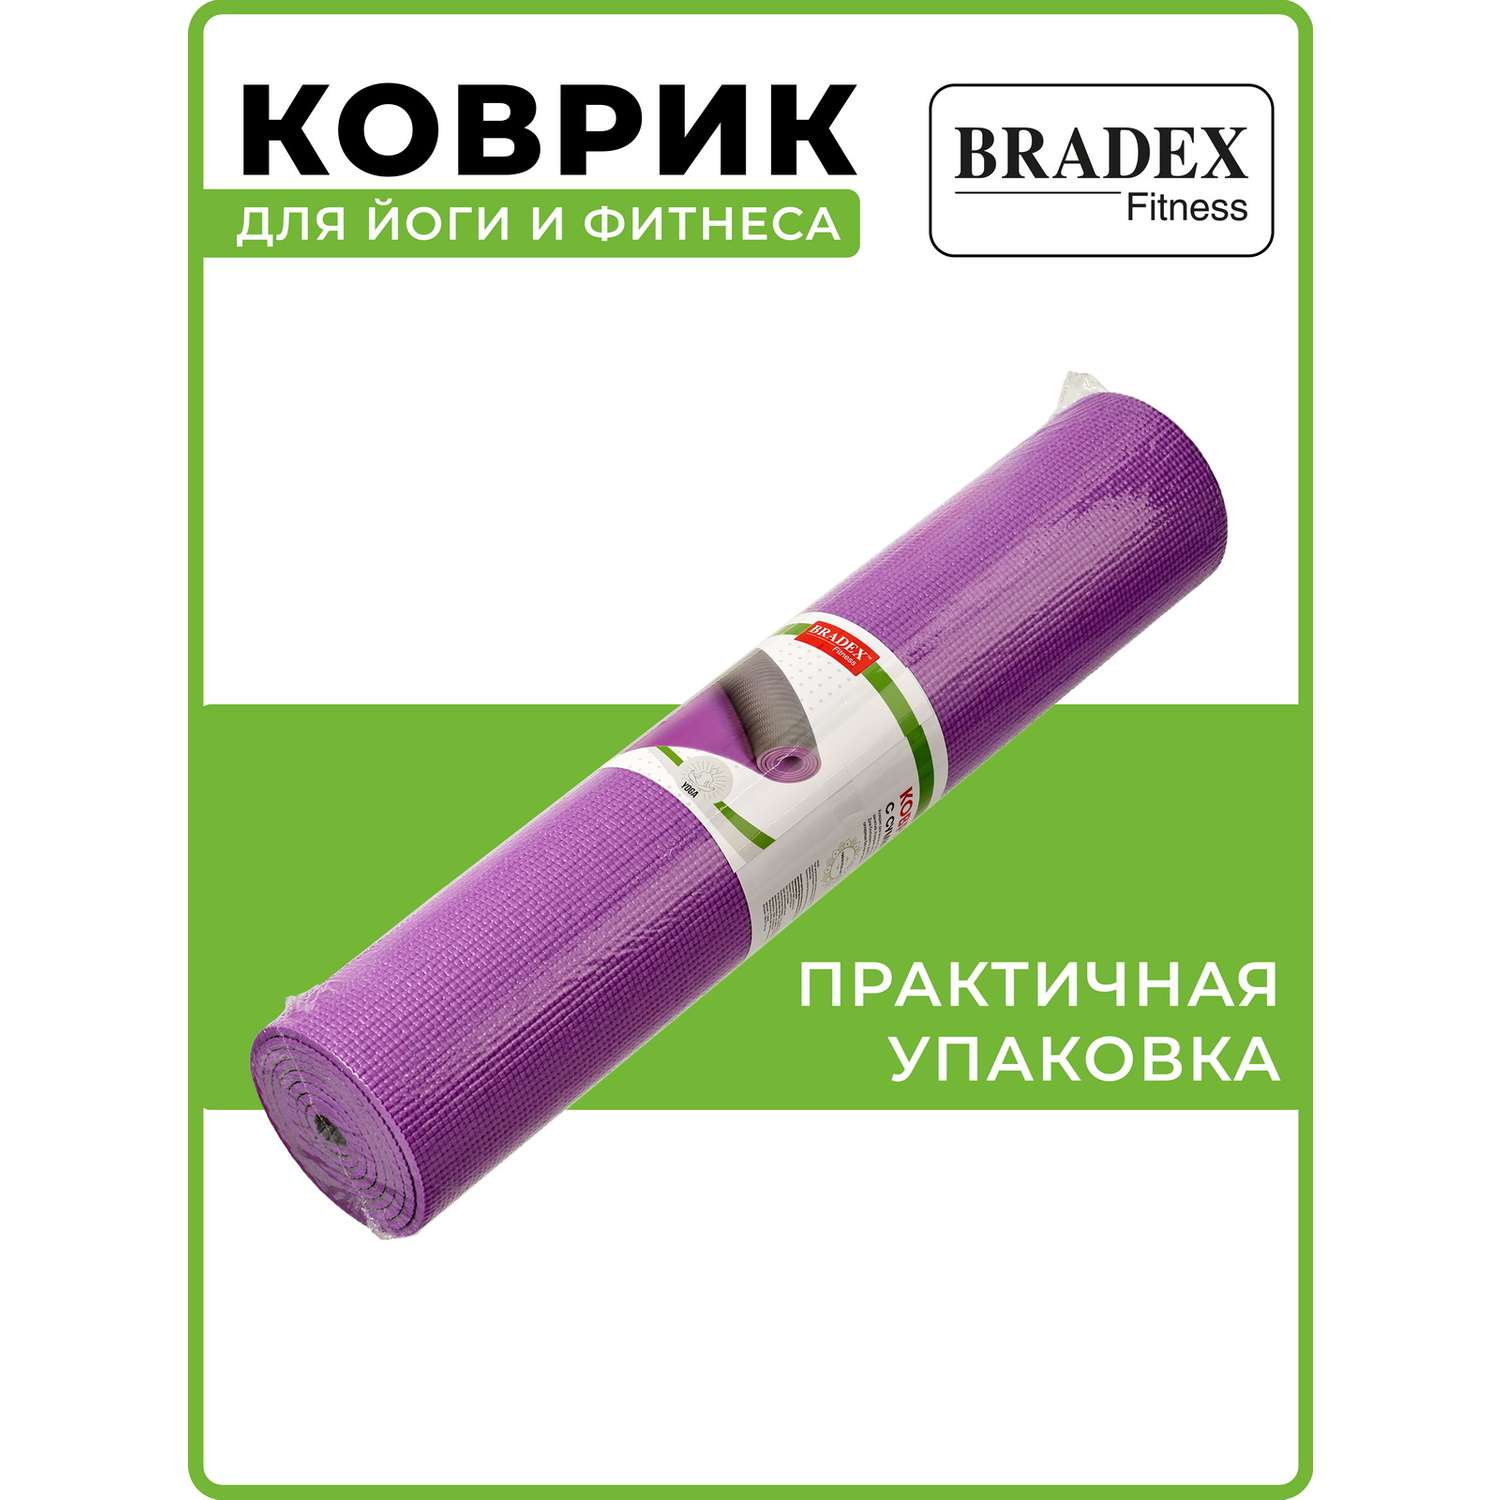 Коврик для йоги и фитнеса Bradex двухслойный фиолетовый 183х61 см - фото 13